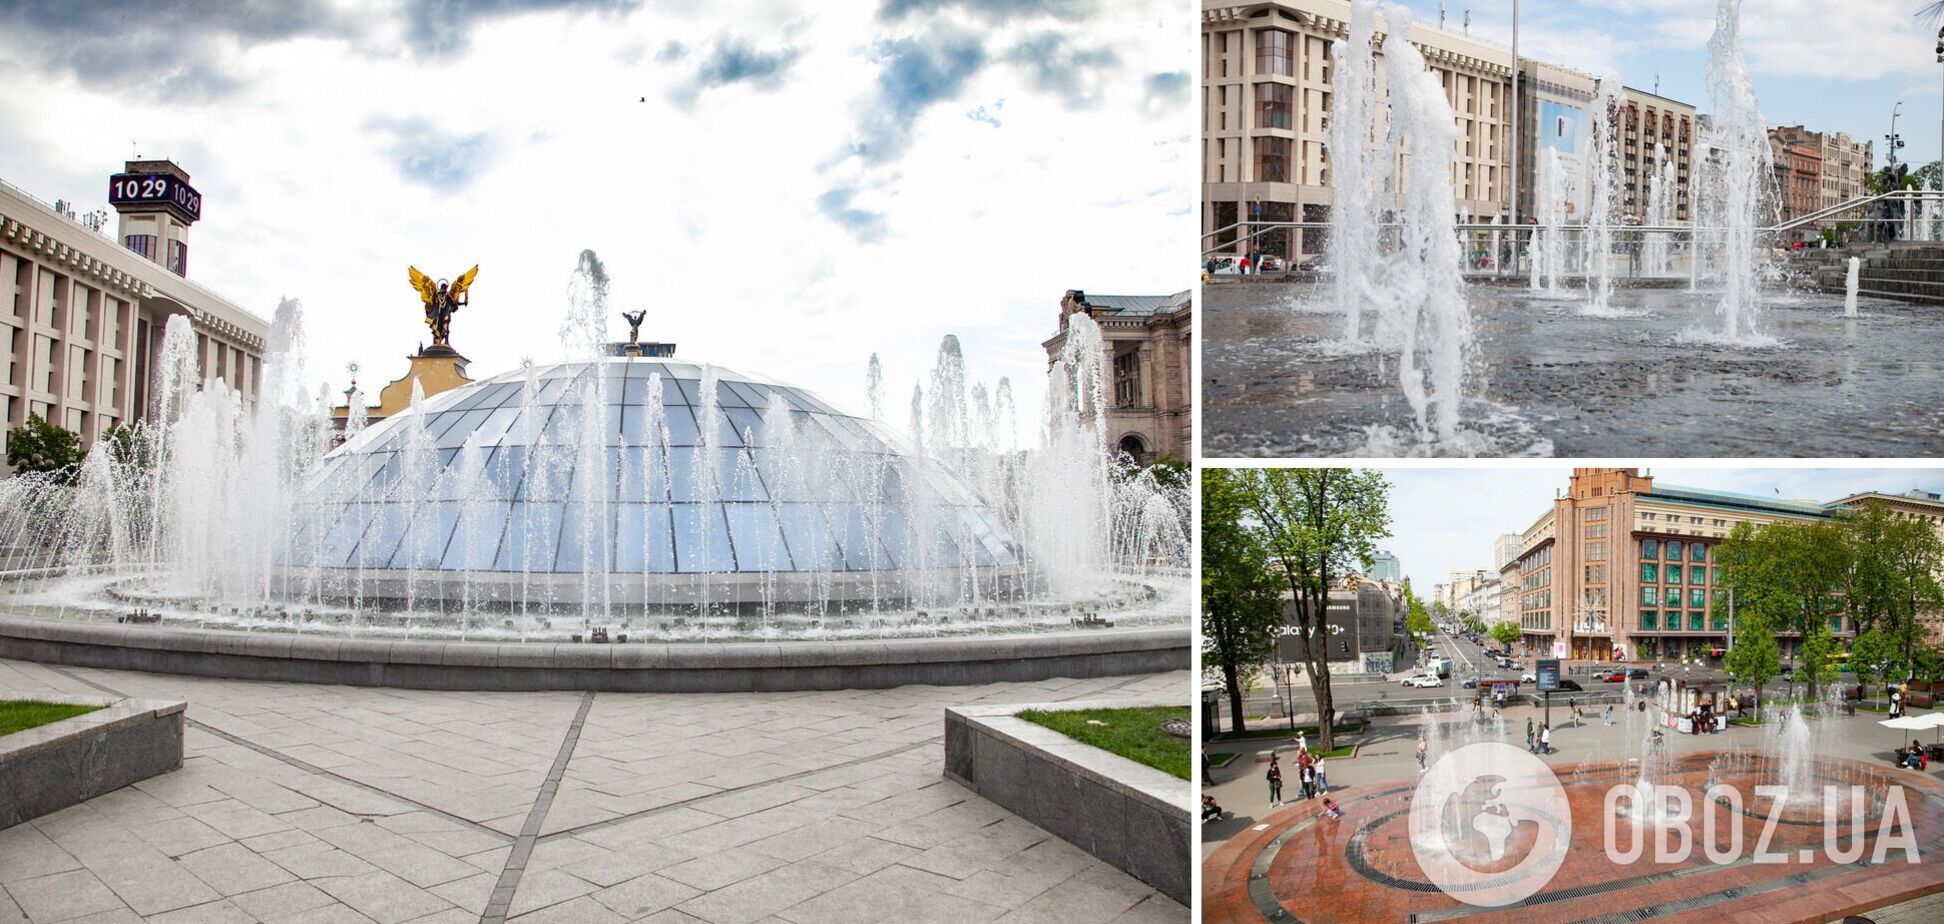 Часть столичных фонтанов в этом году не будет работать